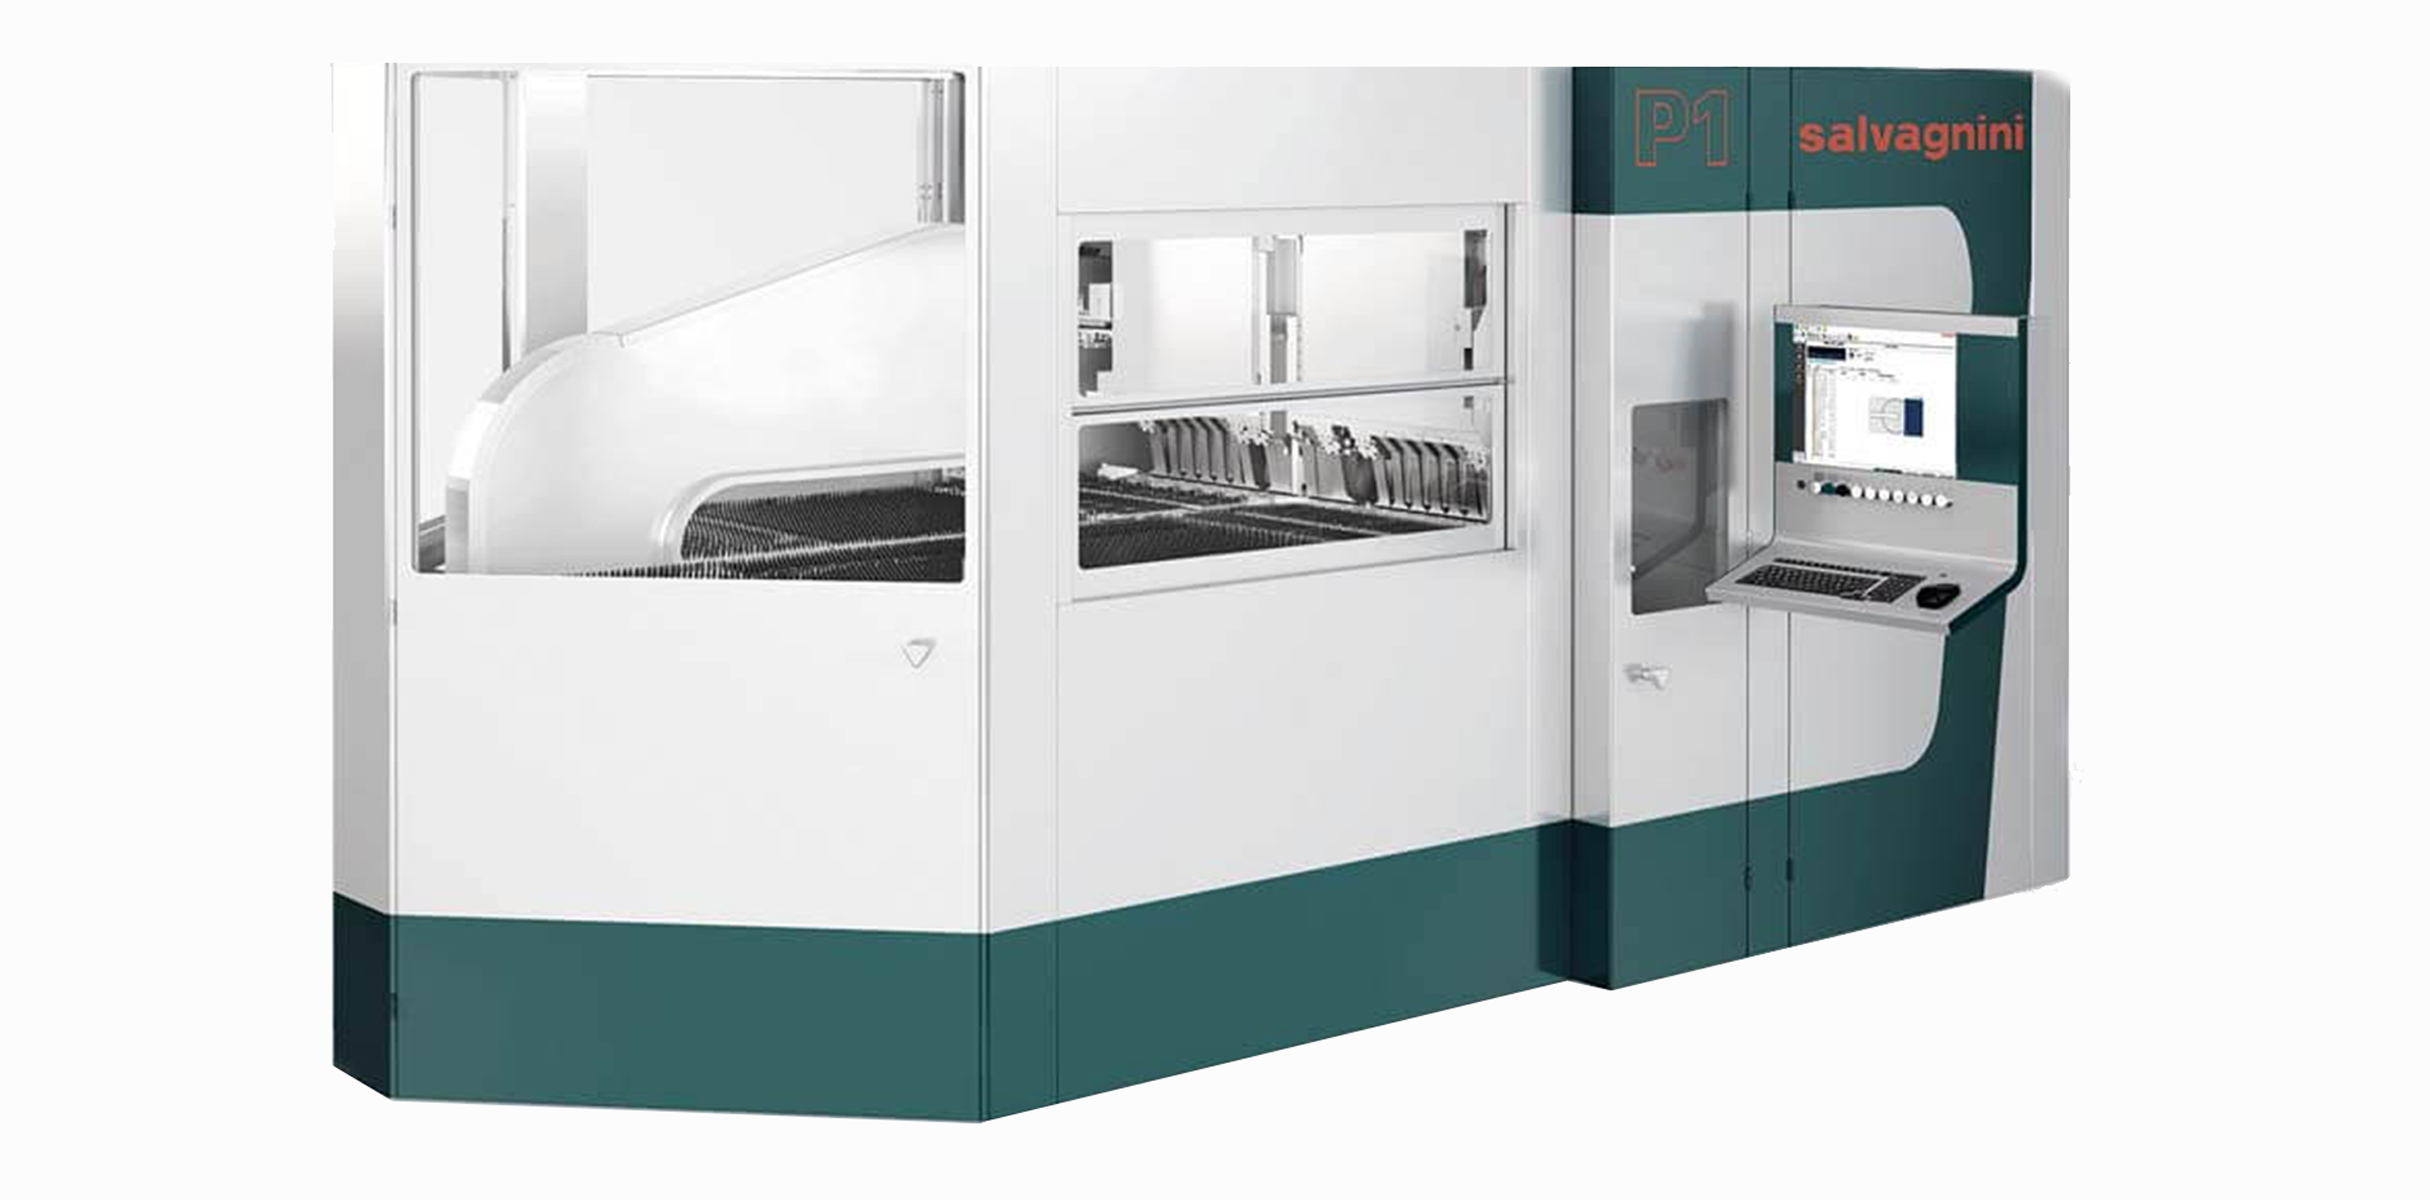 Dabew - Automat gnący w technologi CNC Salvagini. Szybkie gięcie obniżając ksozty produkcji